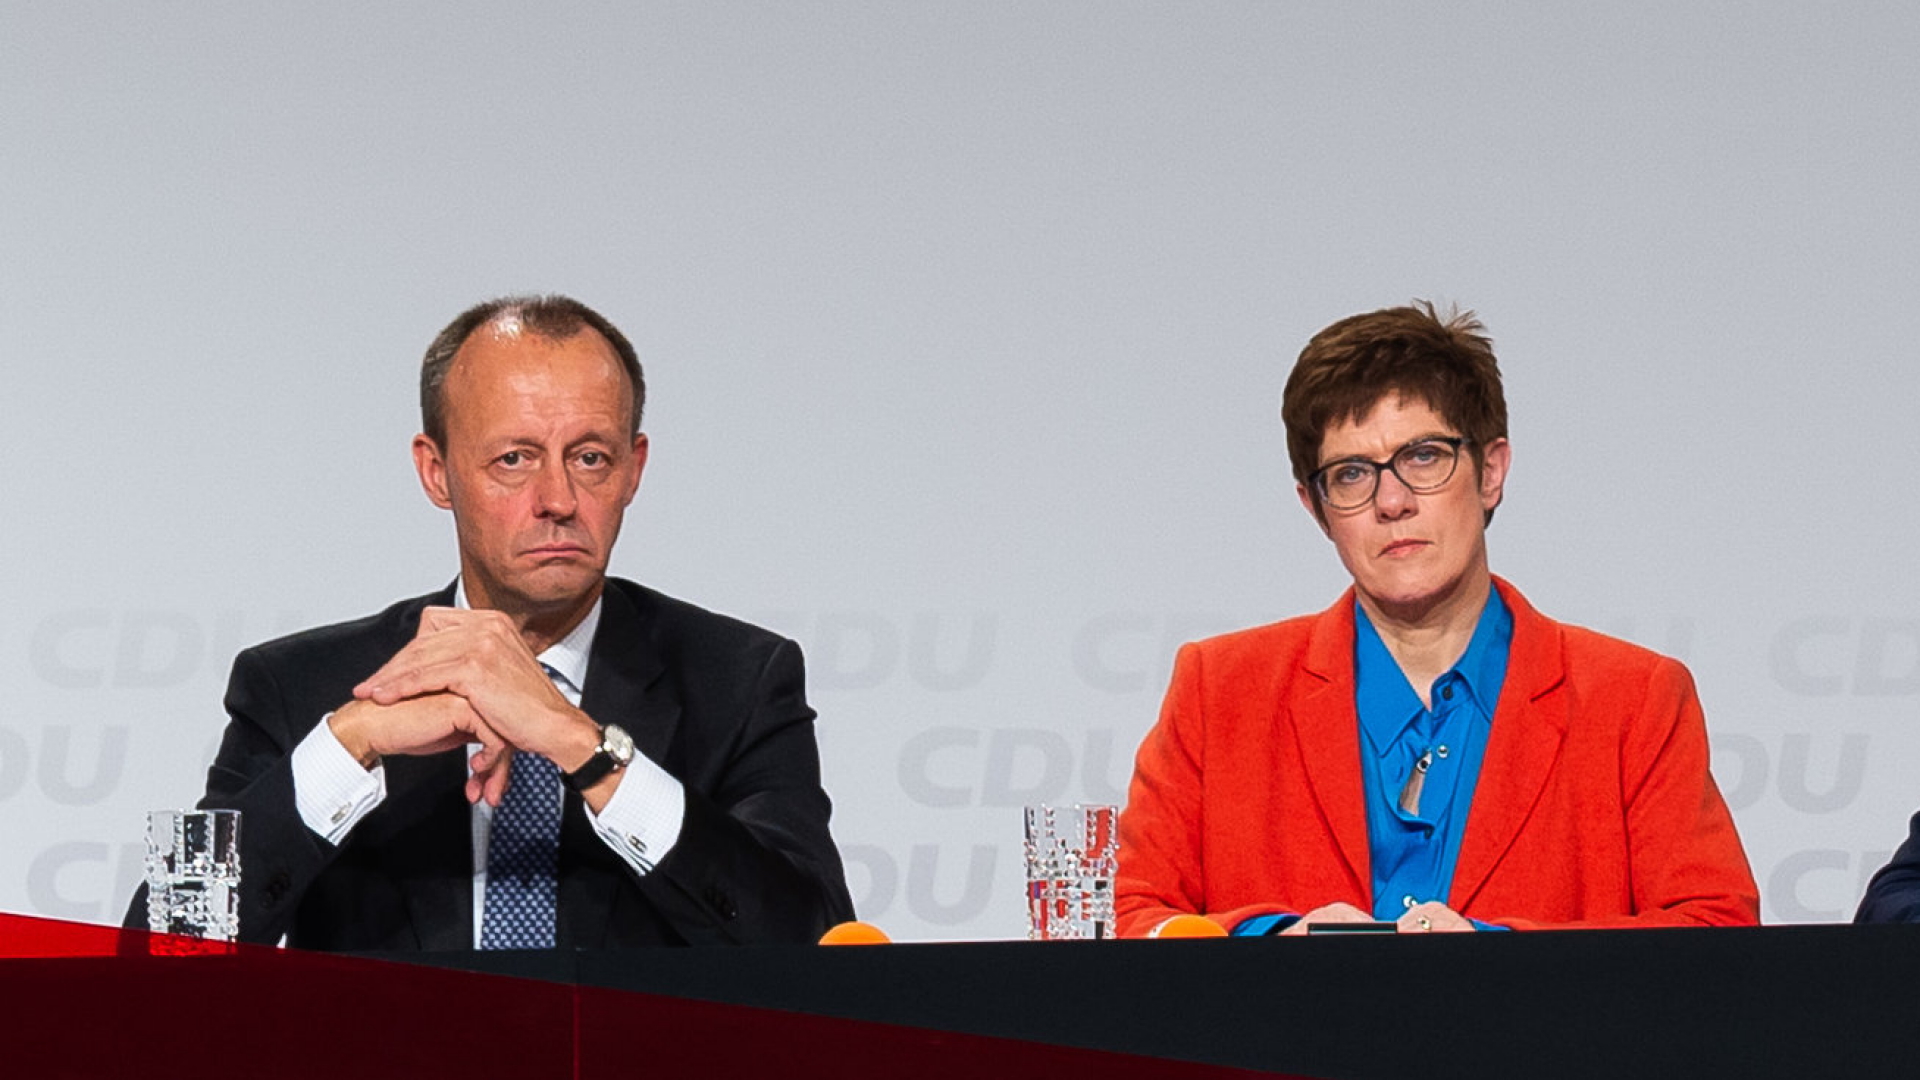 Merz und Kramp-Karrenbauer bei CDU-Regionalkonferenz | Bildquelle: dpa